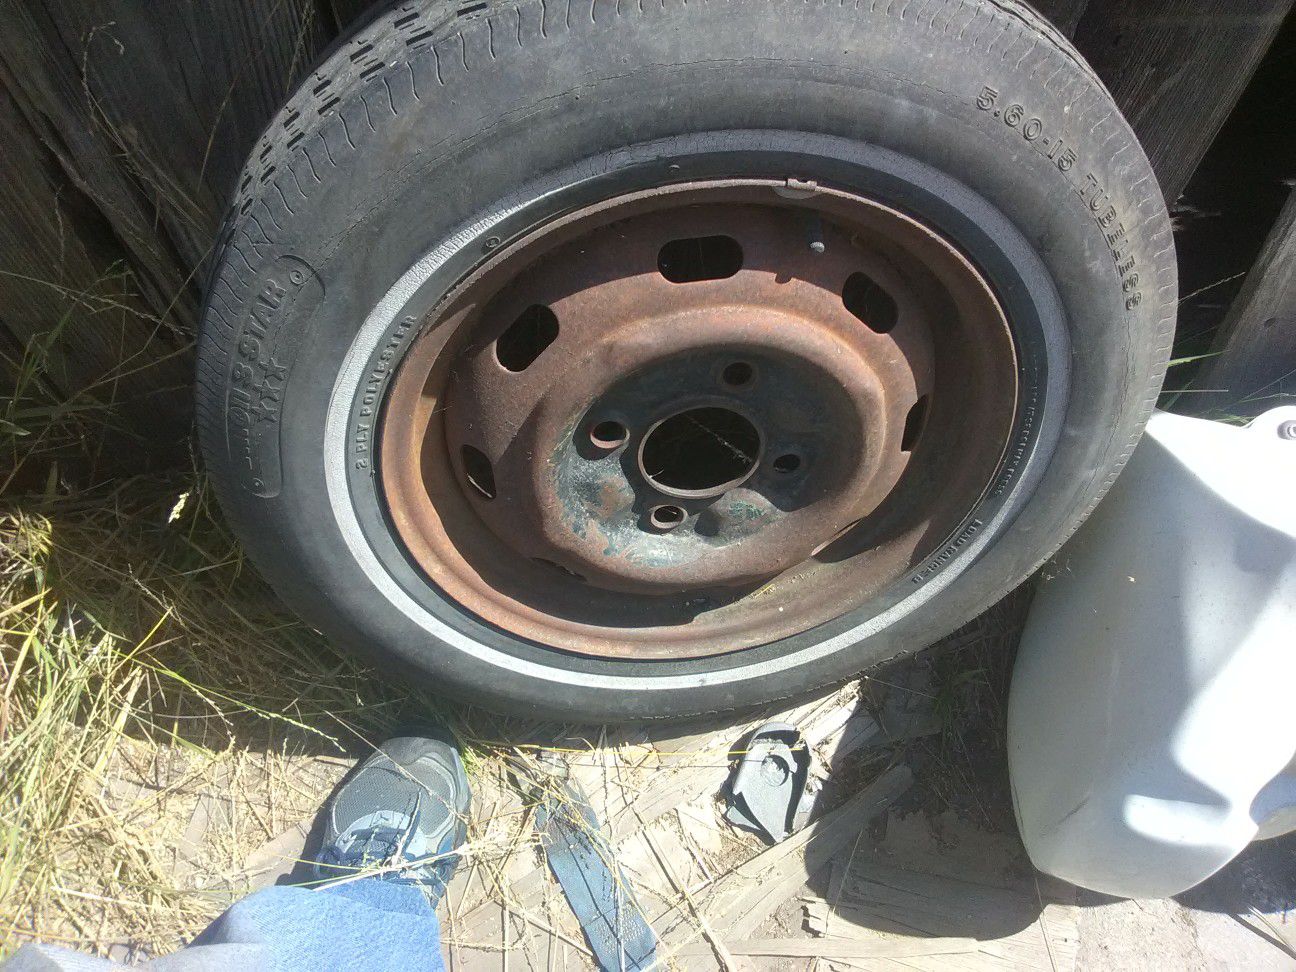 Karmann Ghia rim and tire